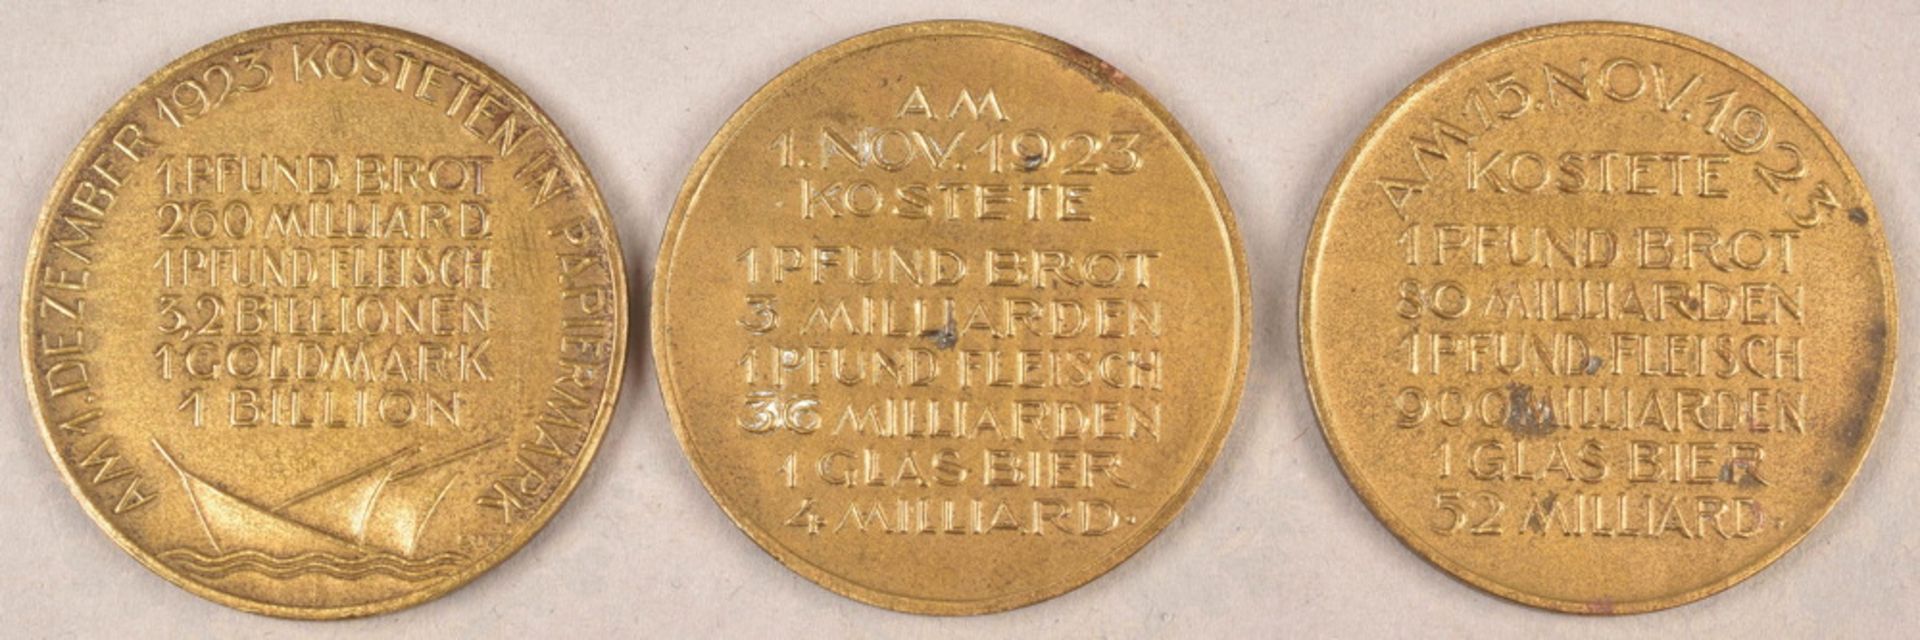 Medaillensatz Preisinflation 1923 - Bild 2 aus 2